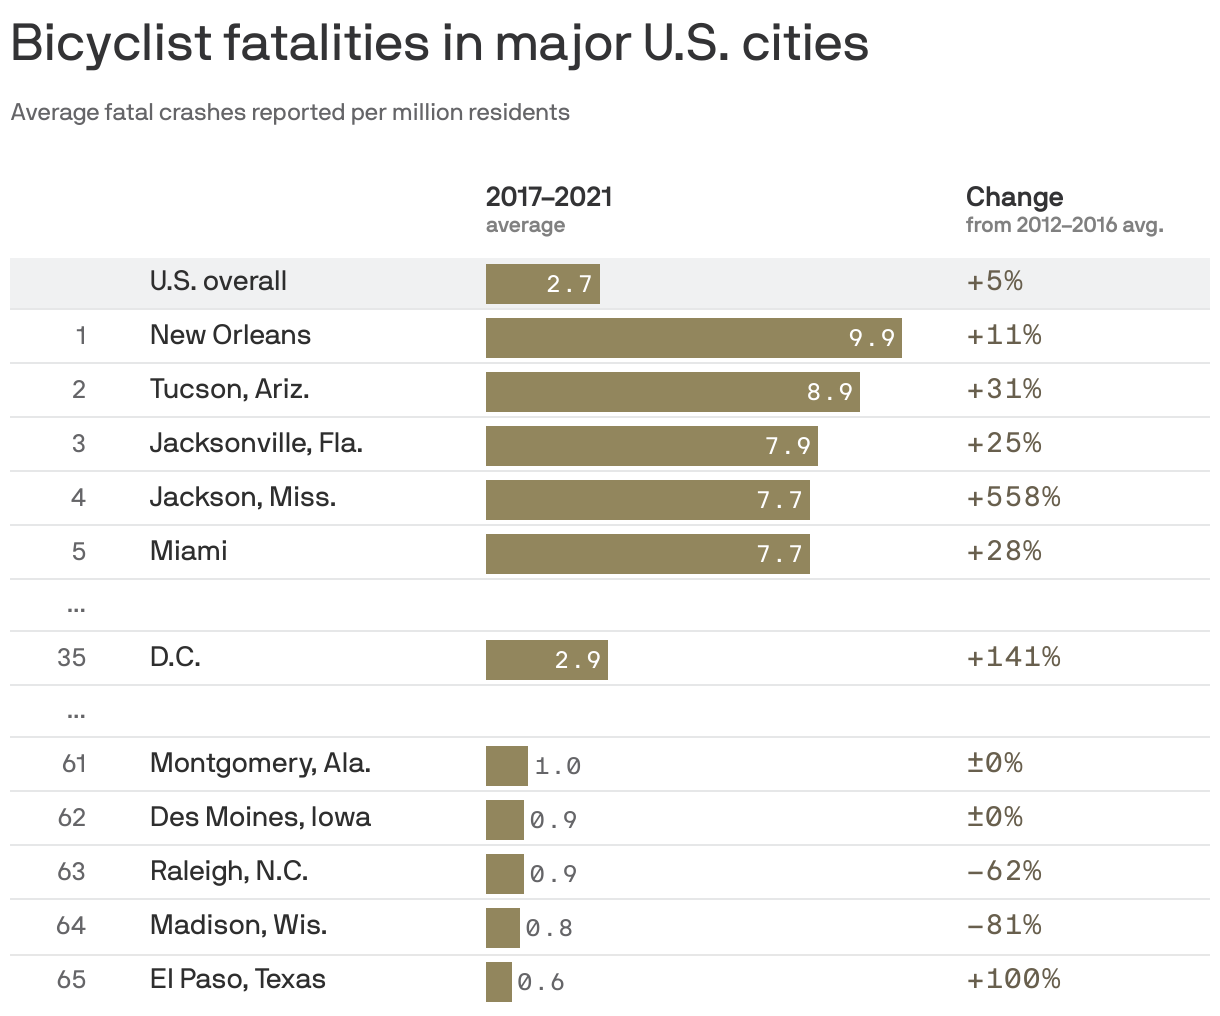 Bicyclist fatalities in major U.S. cities